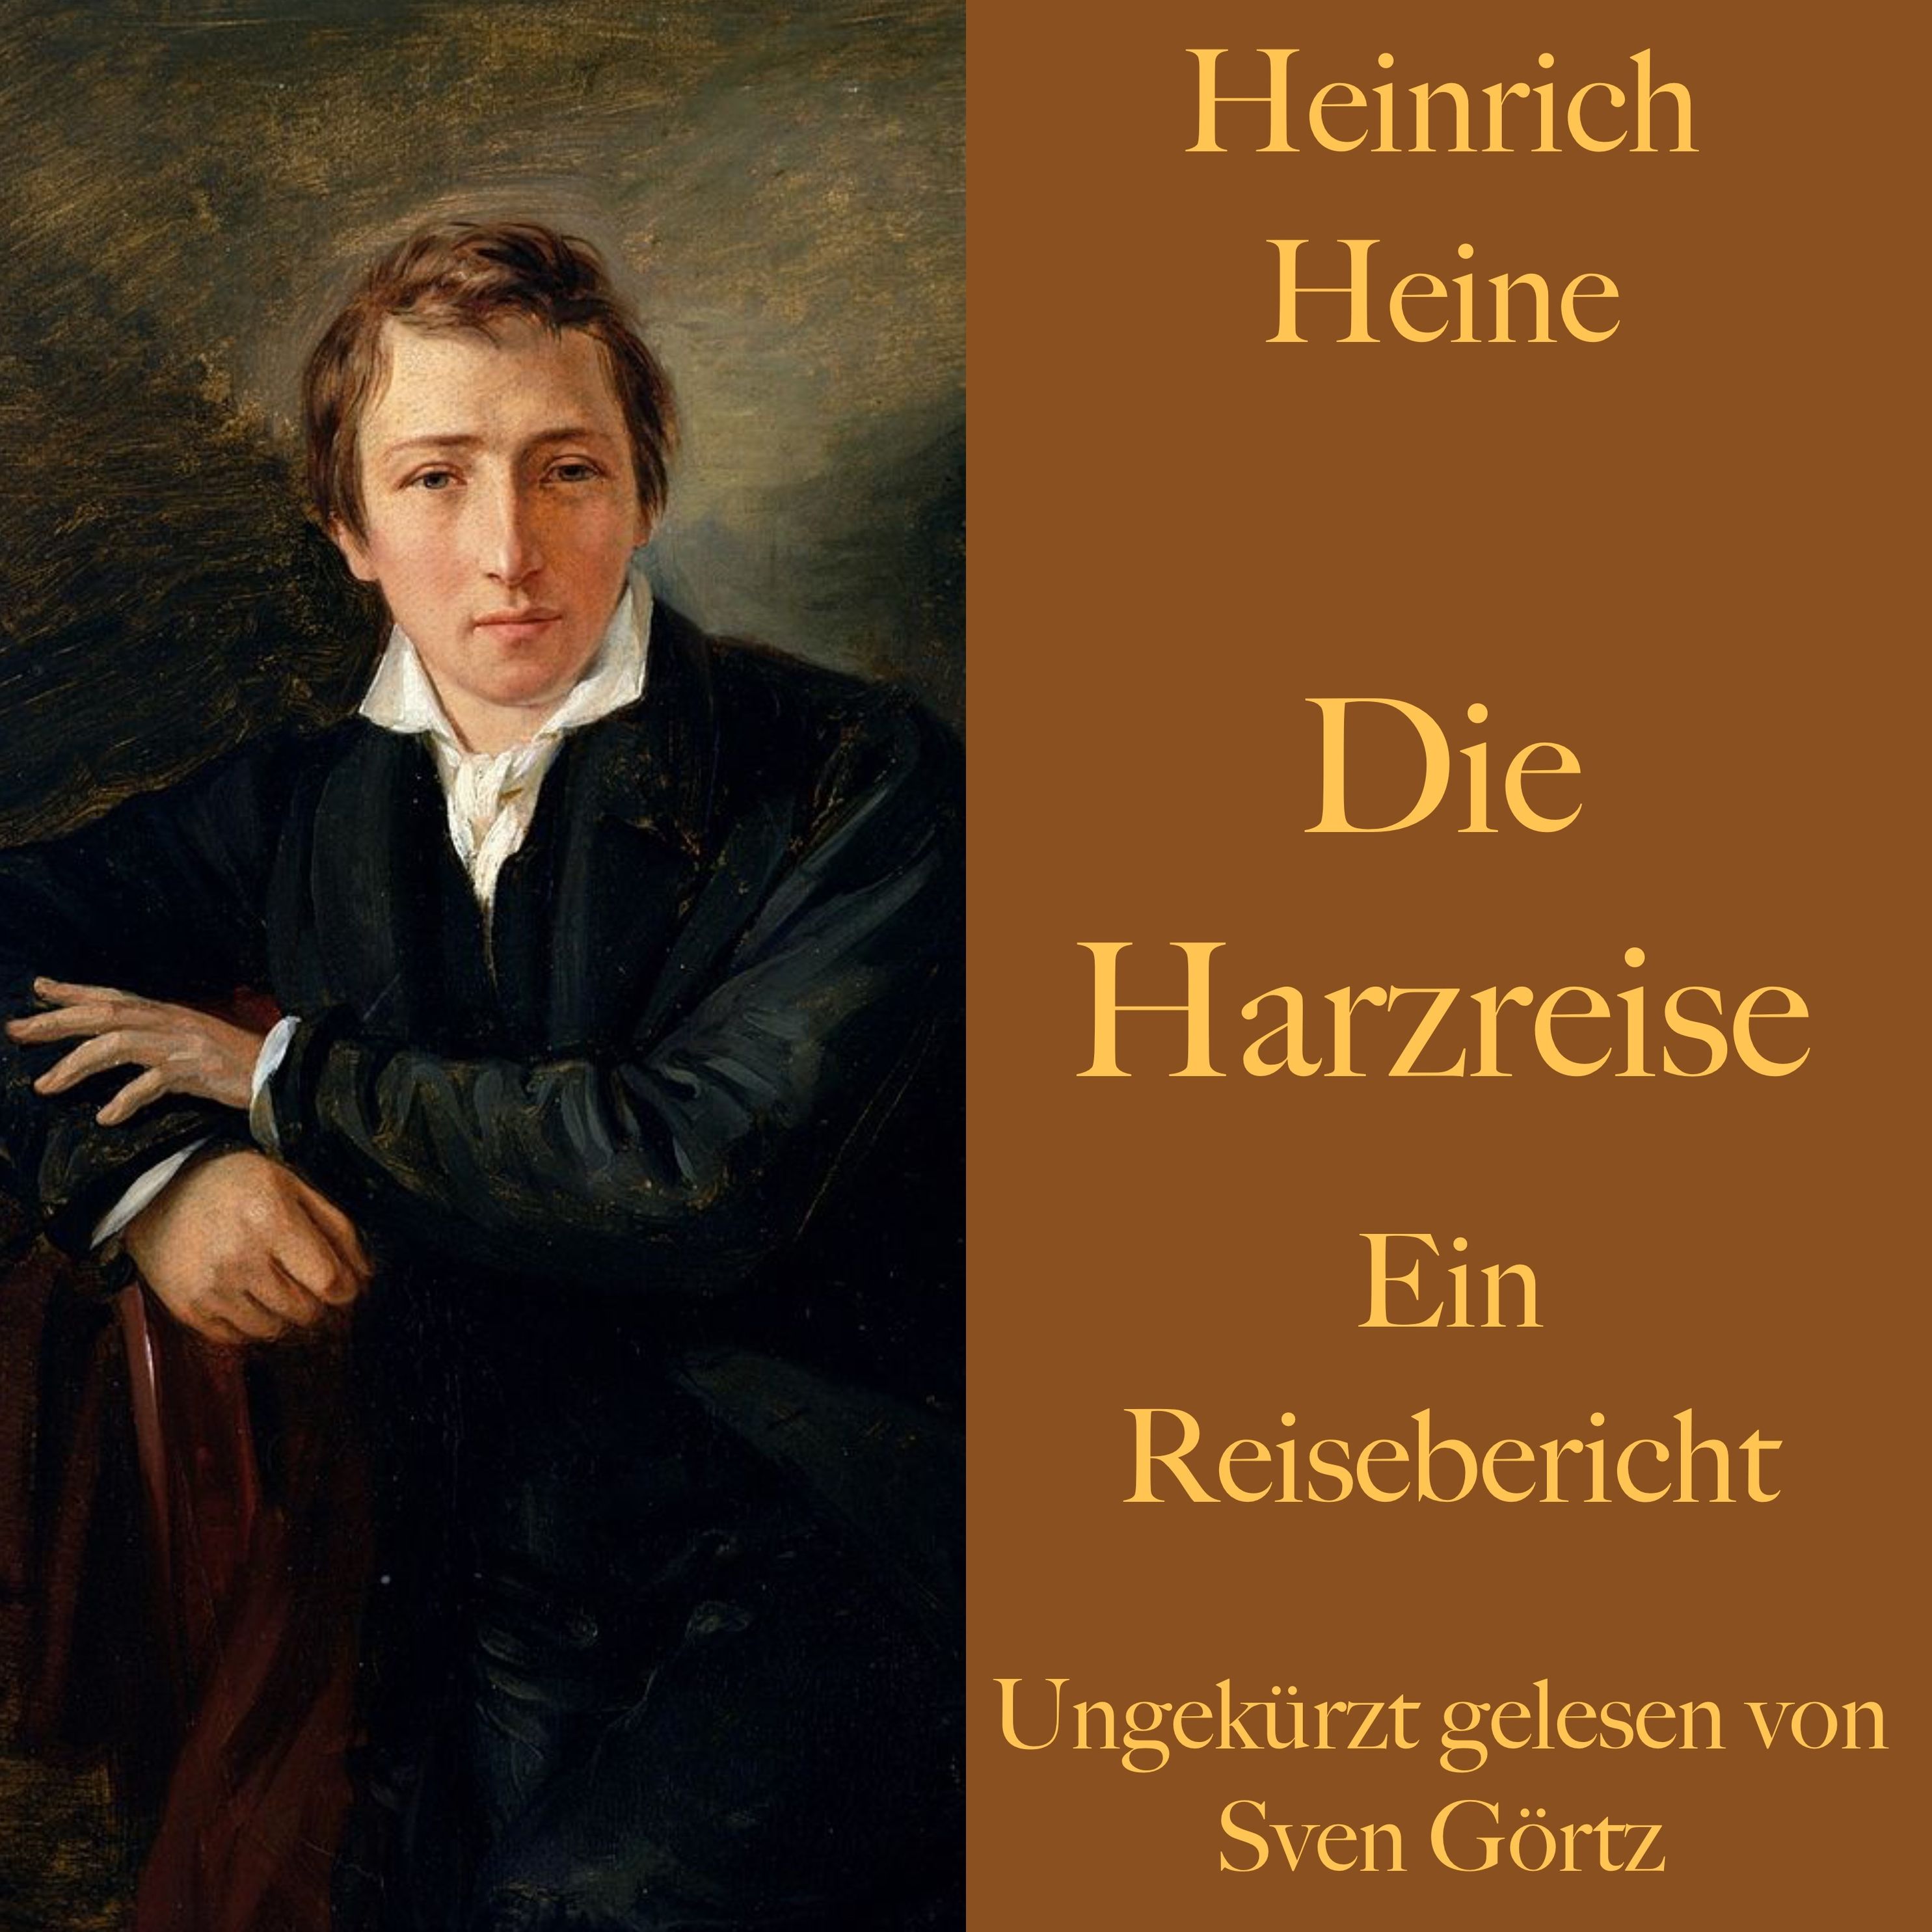 Heinrich Heine: Die Harzreise Hörbuch downloaden bei Weltbild.ch